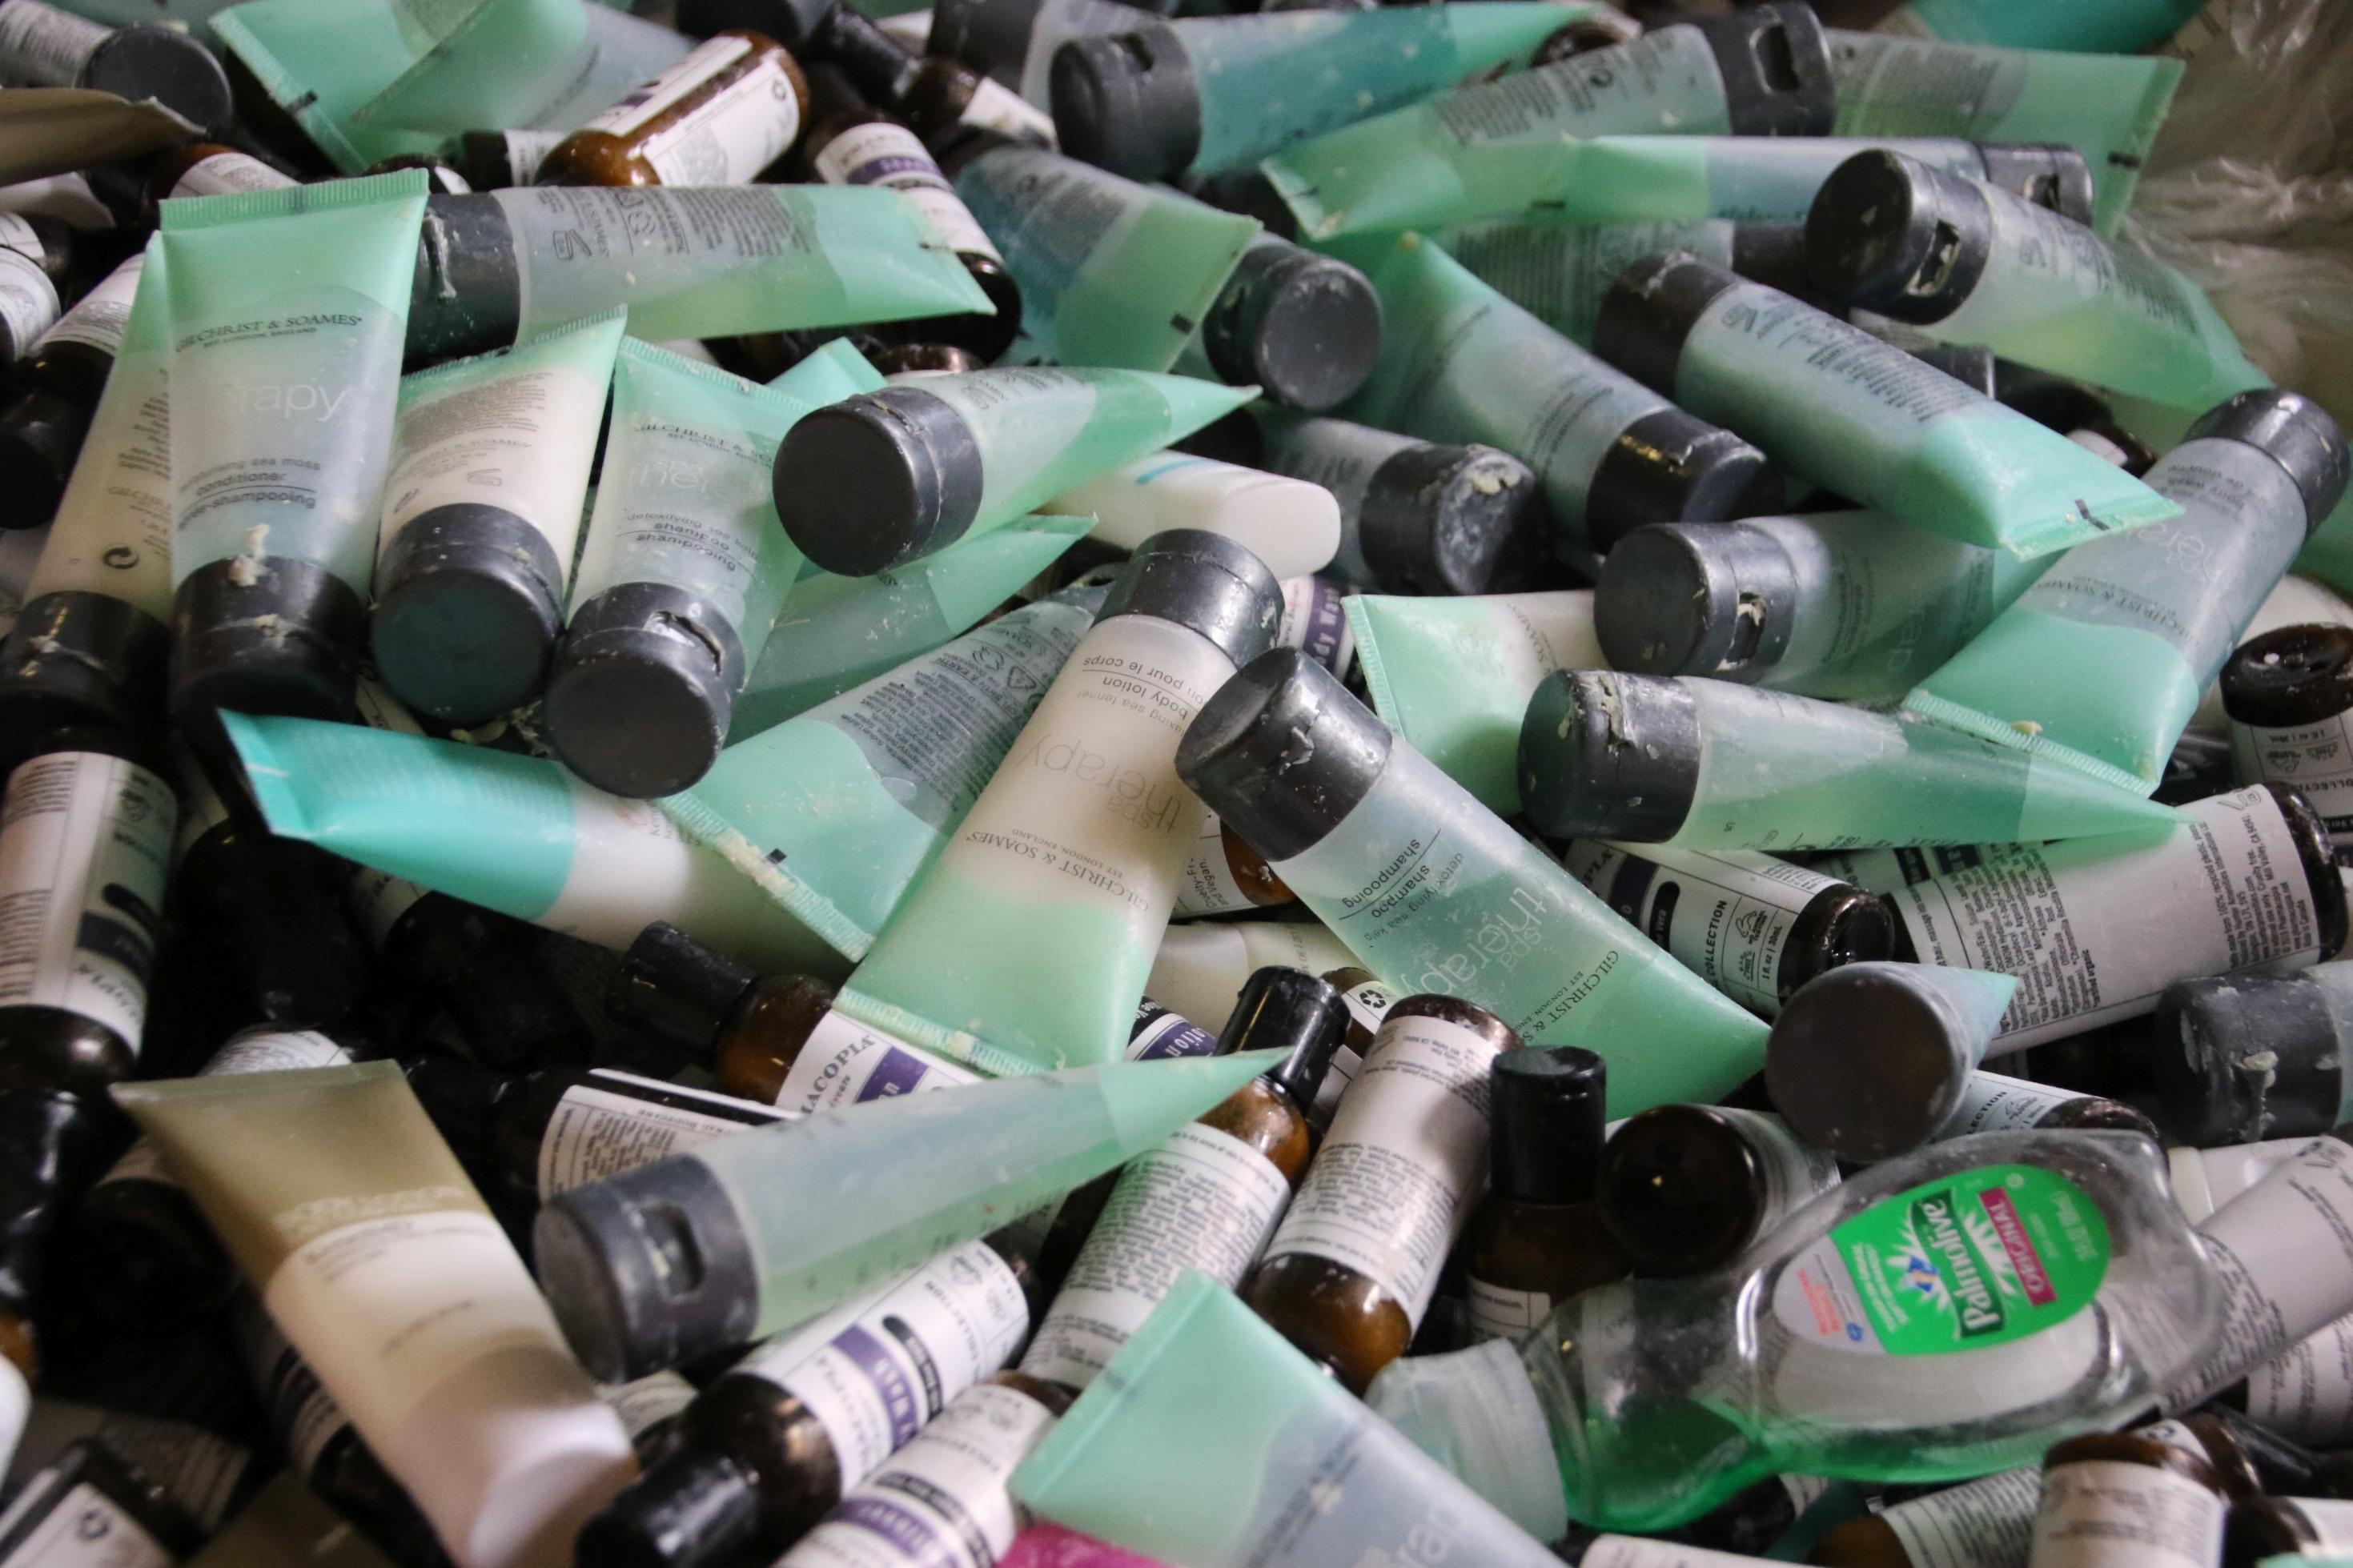 Halbleere Kosmetikflaschen aus Hotelzimmern stapeln sich